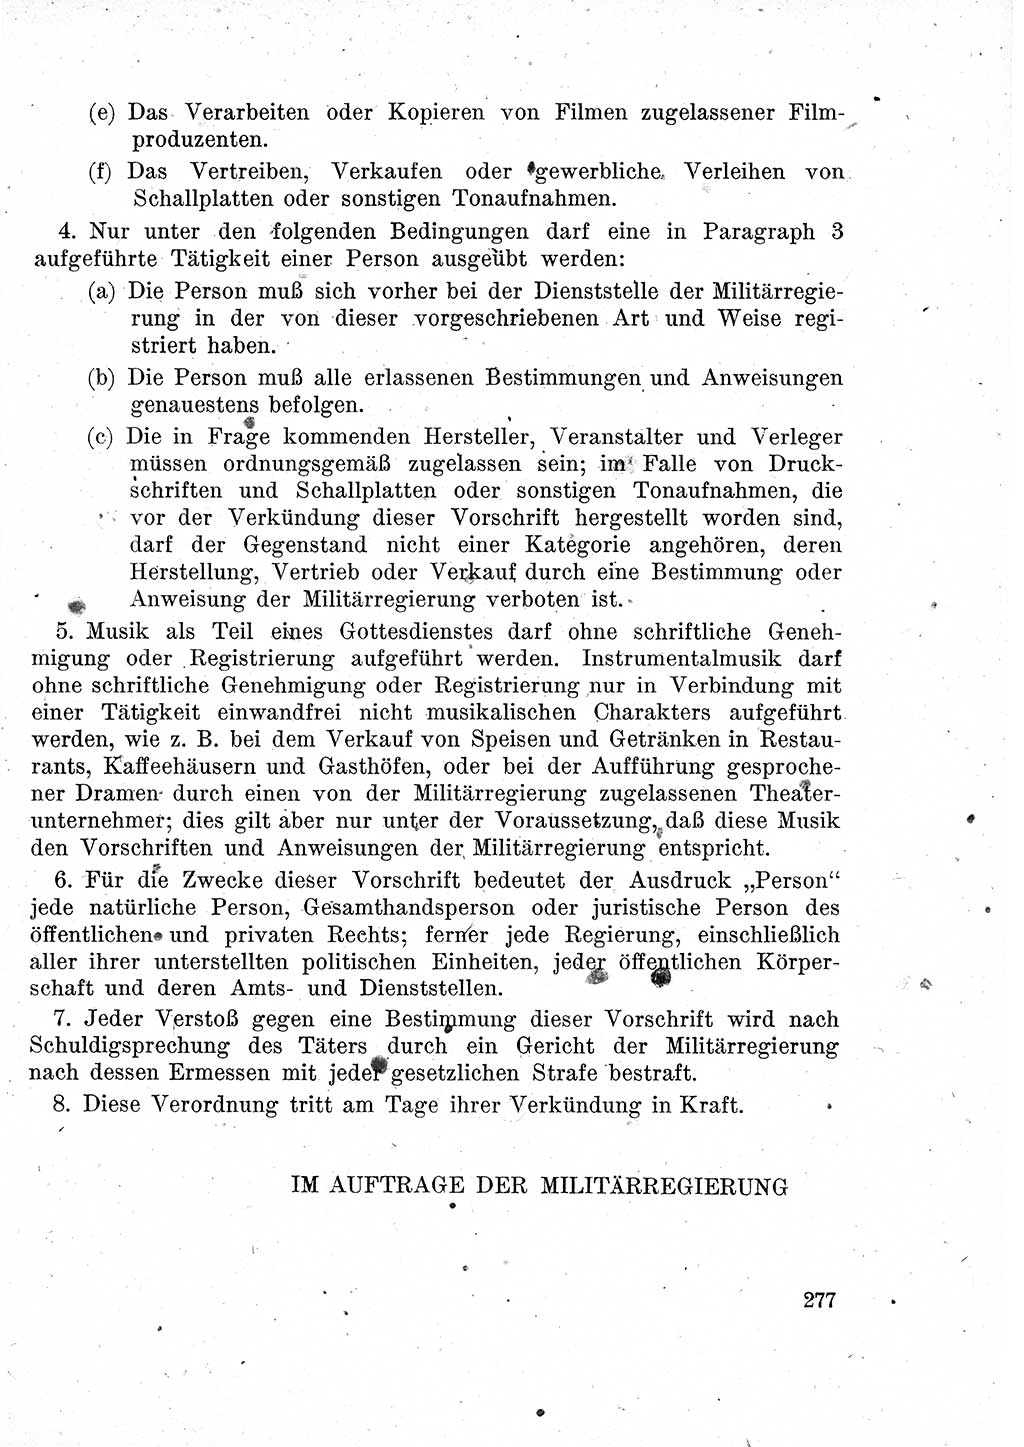 Das Recht der Besatzungsmacht (Deutschland), Proklamationen, Deklerationen, Verordnungen, Gesetze und Bekanntmachungen 1947, Seite 277 (R. Bes. Dtl. 1947, S. 277)